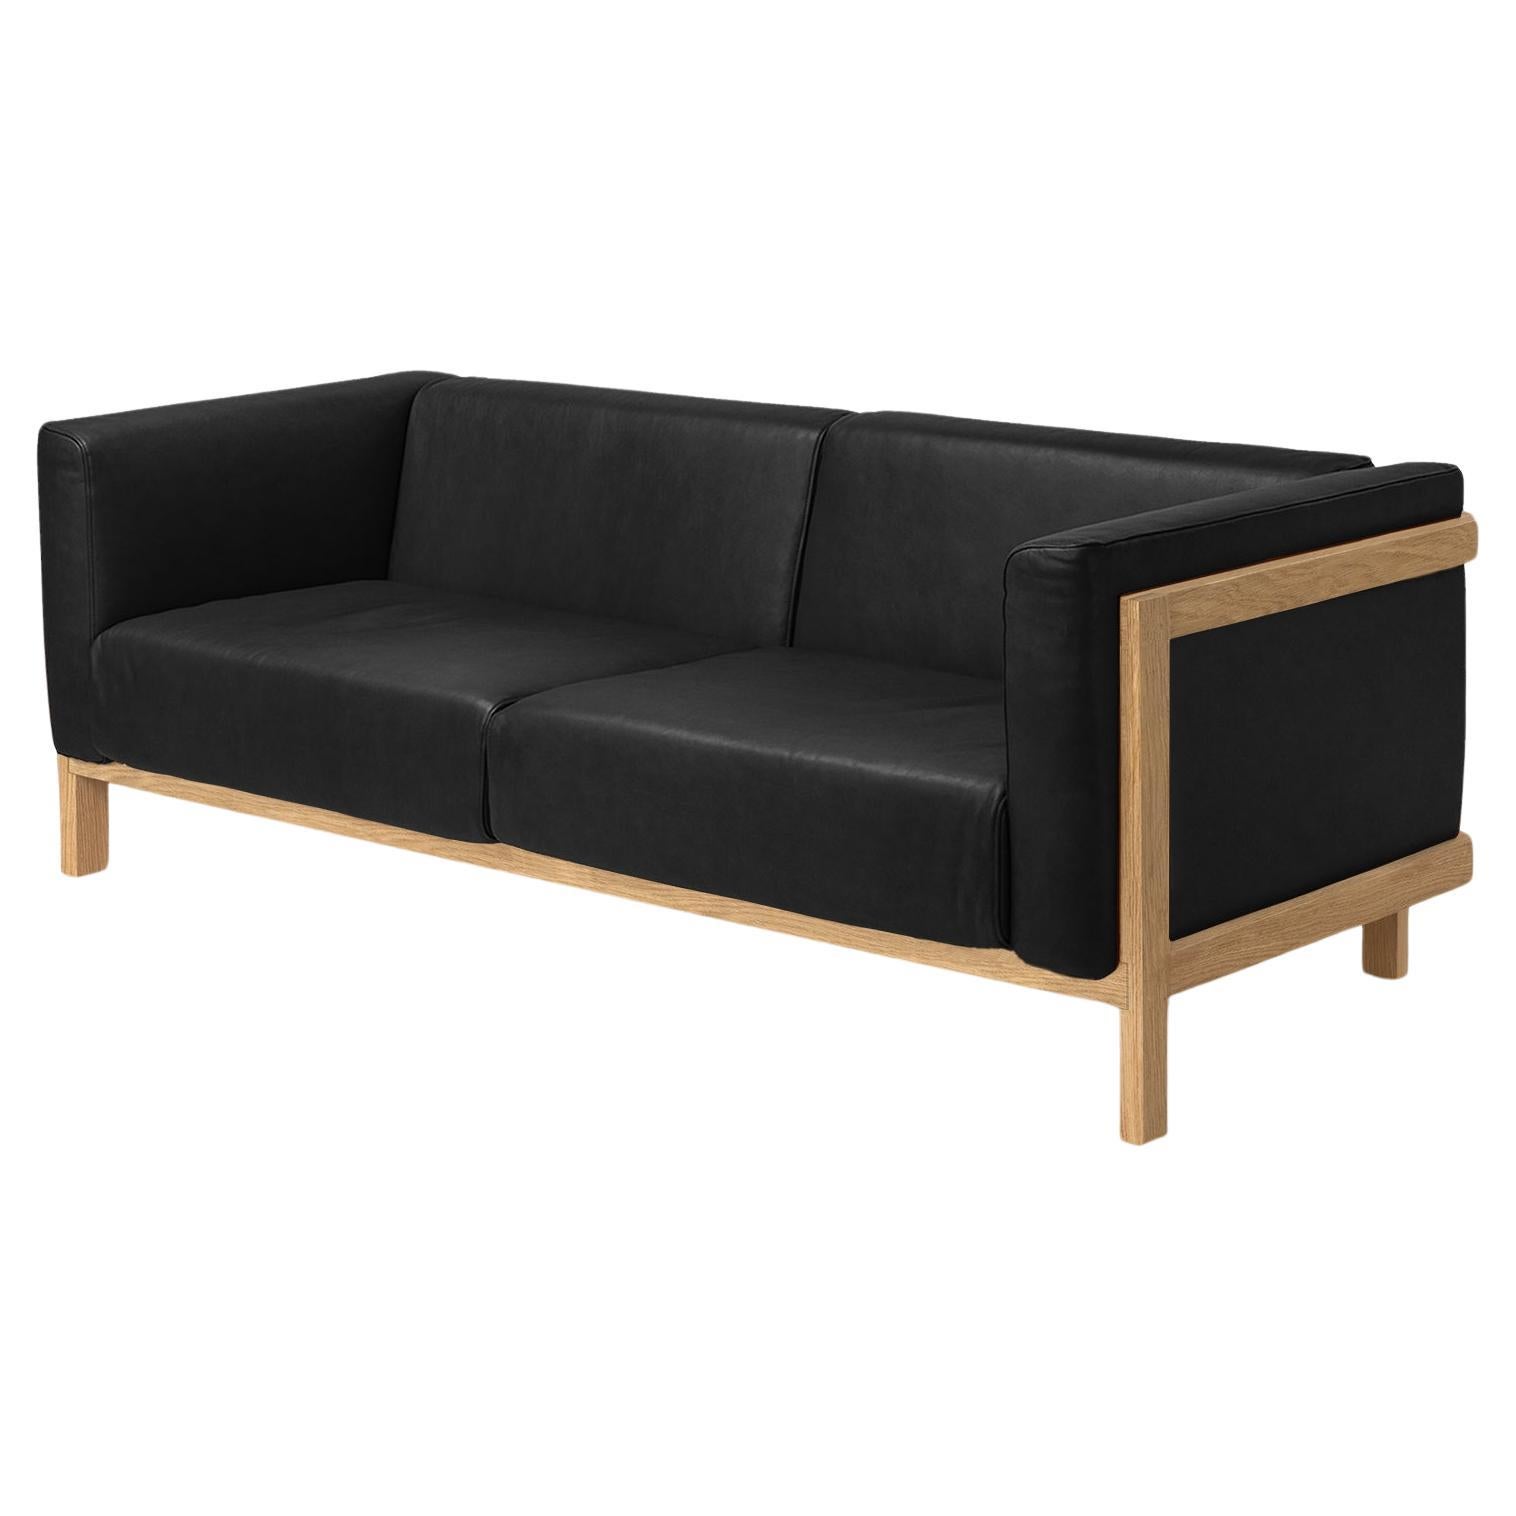 Minimalist three seater sofa oak - leather upholstered